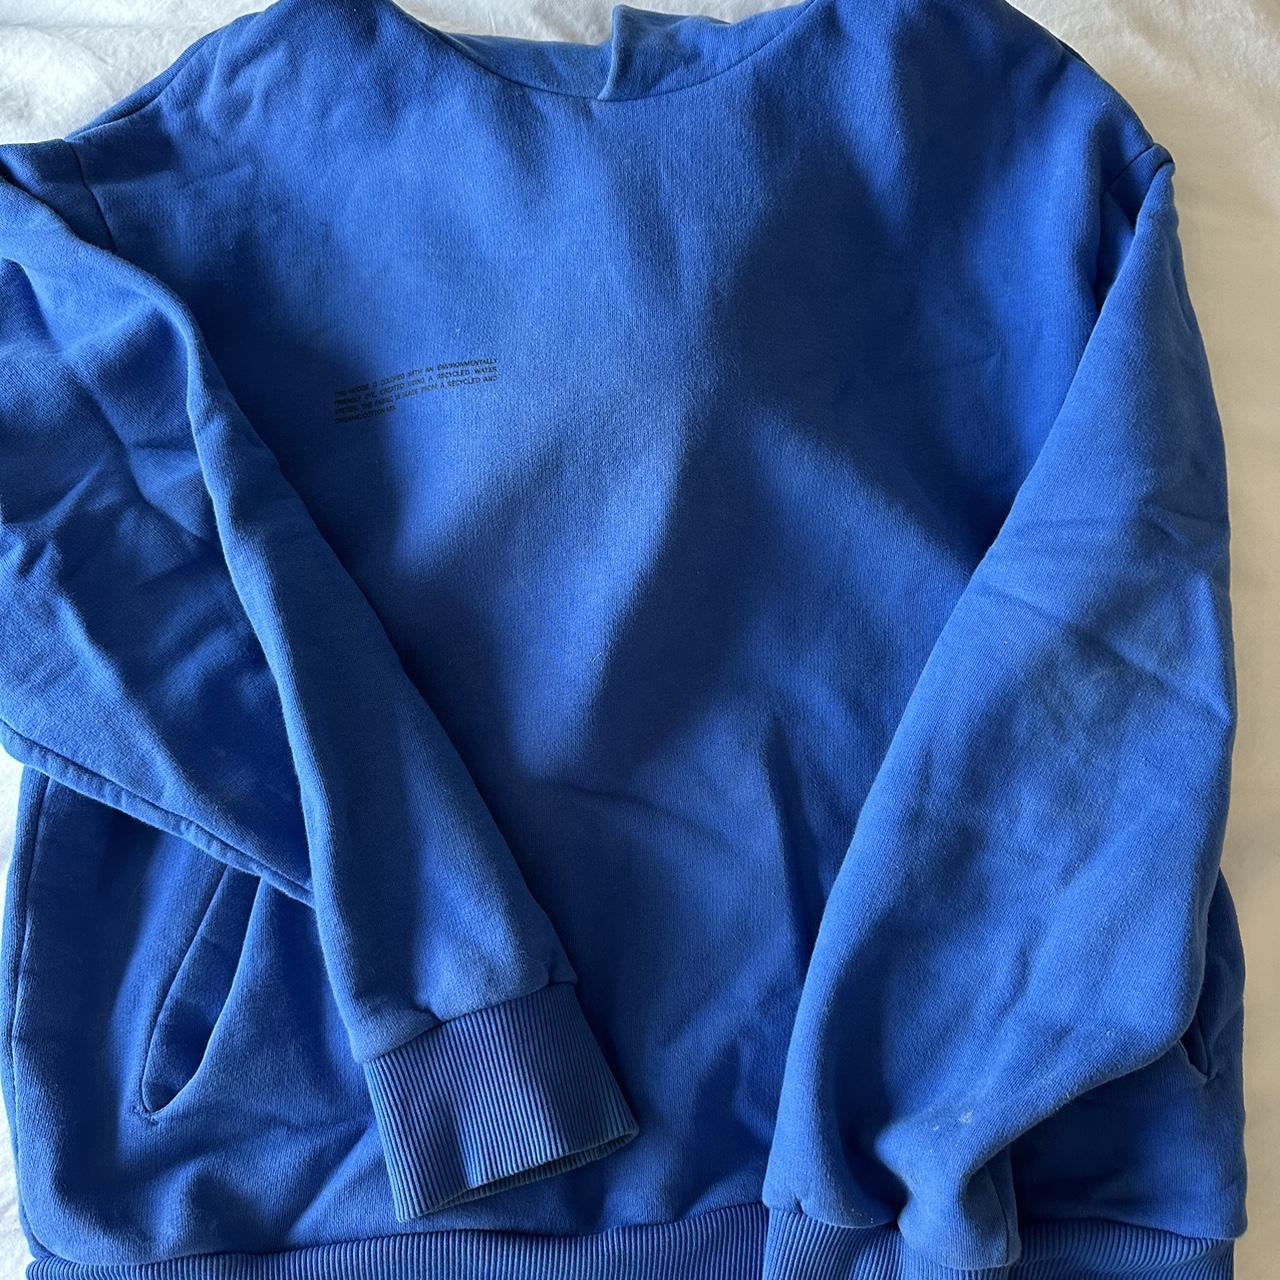 Cobalt blue pangaia hoodie Worn a few times but no... - Depop